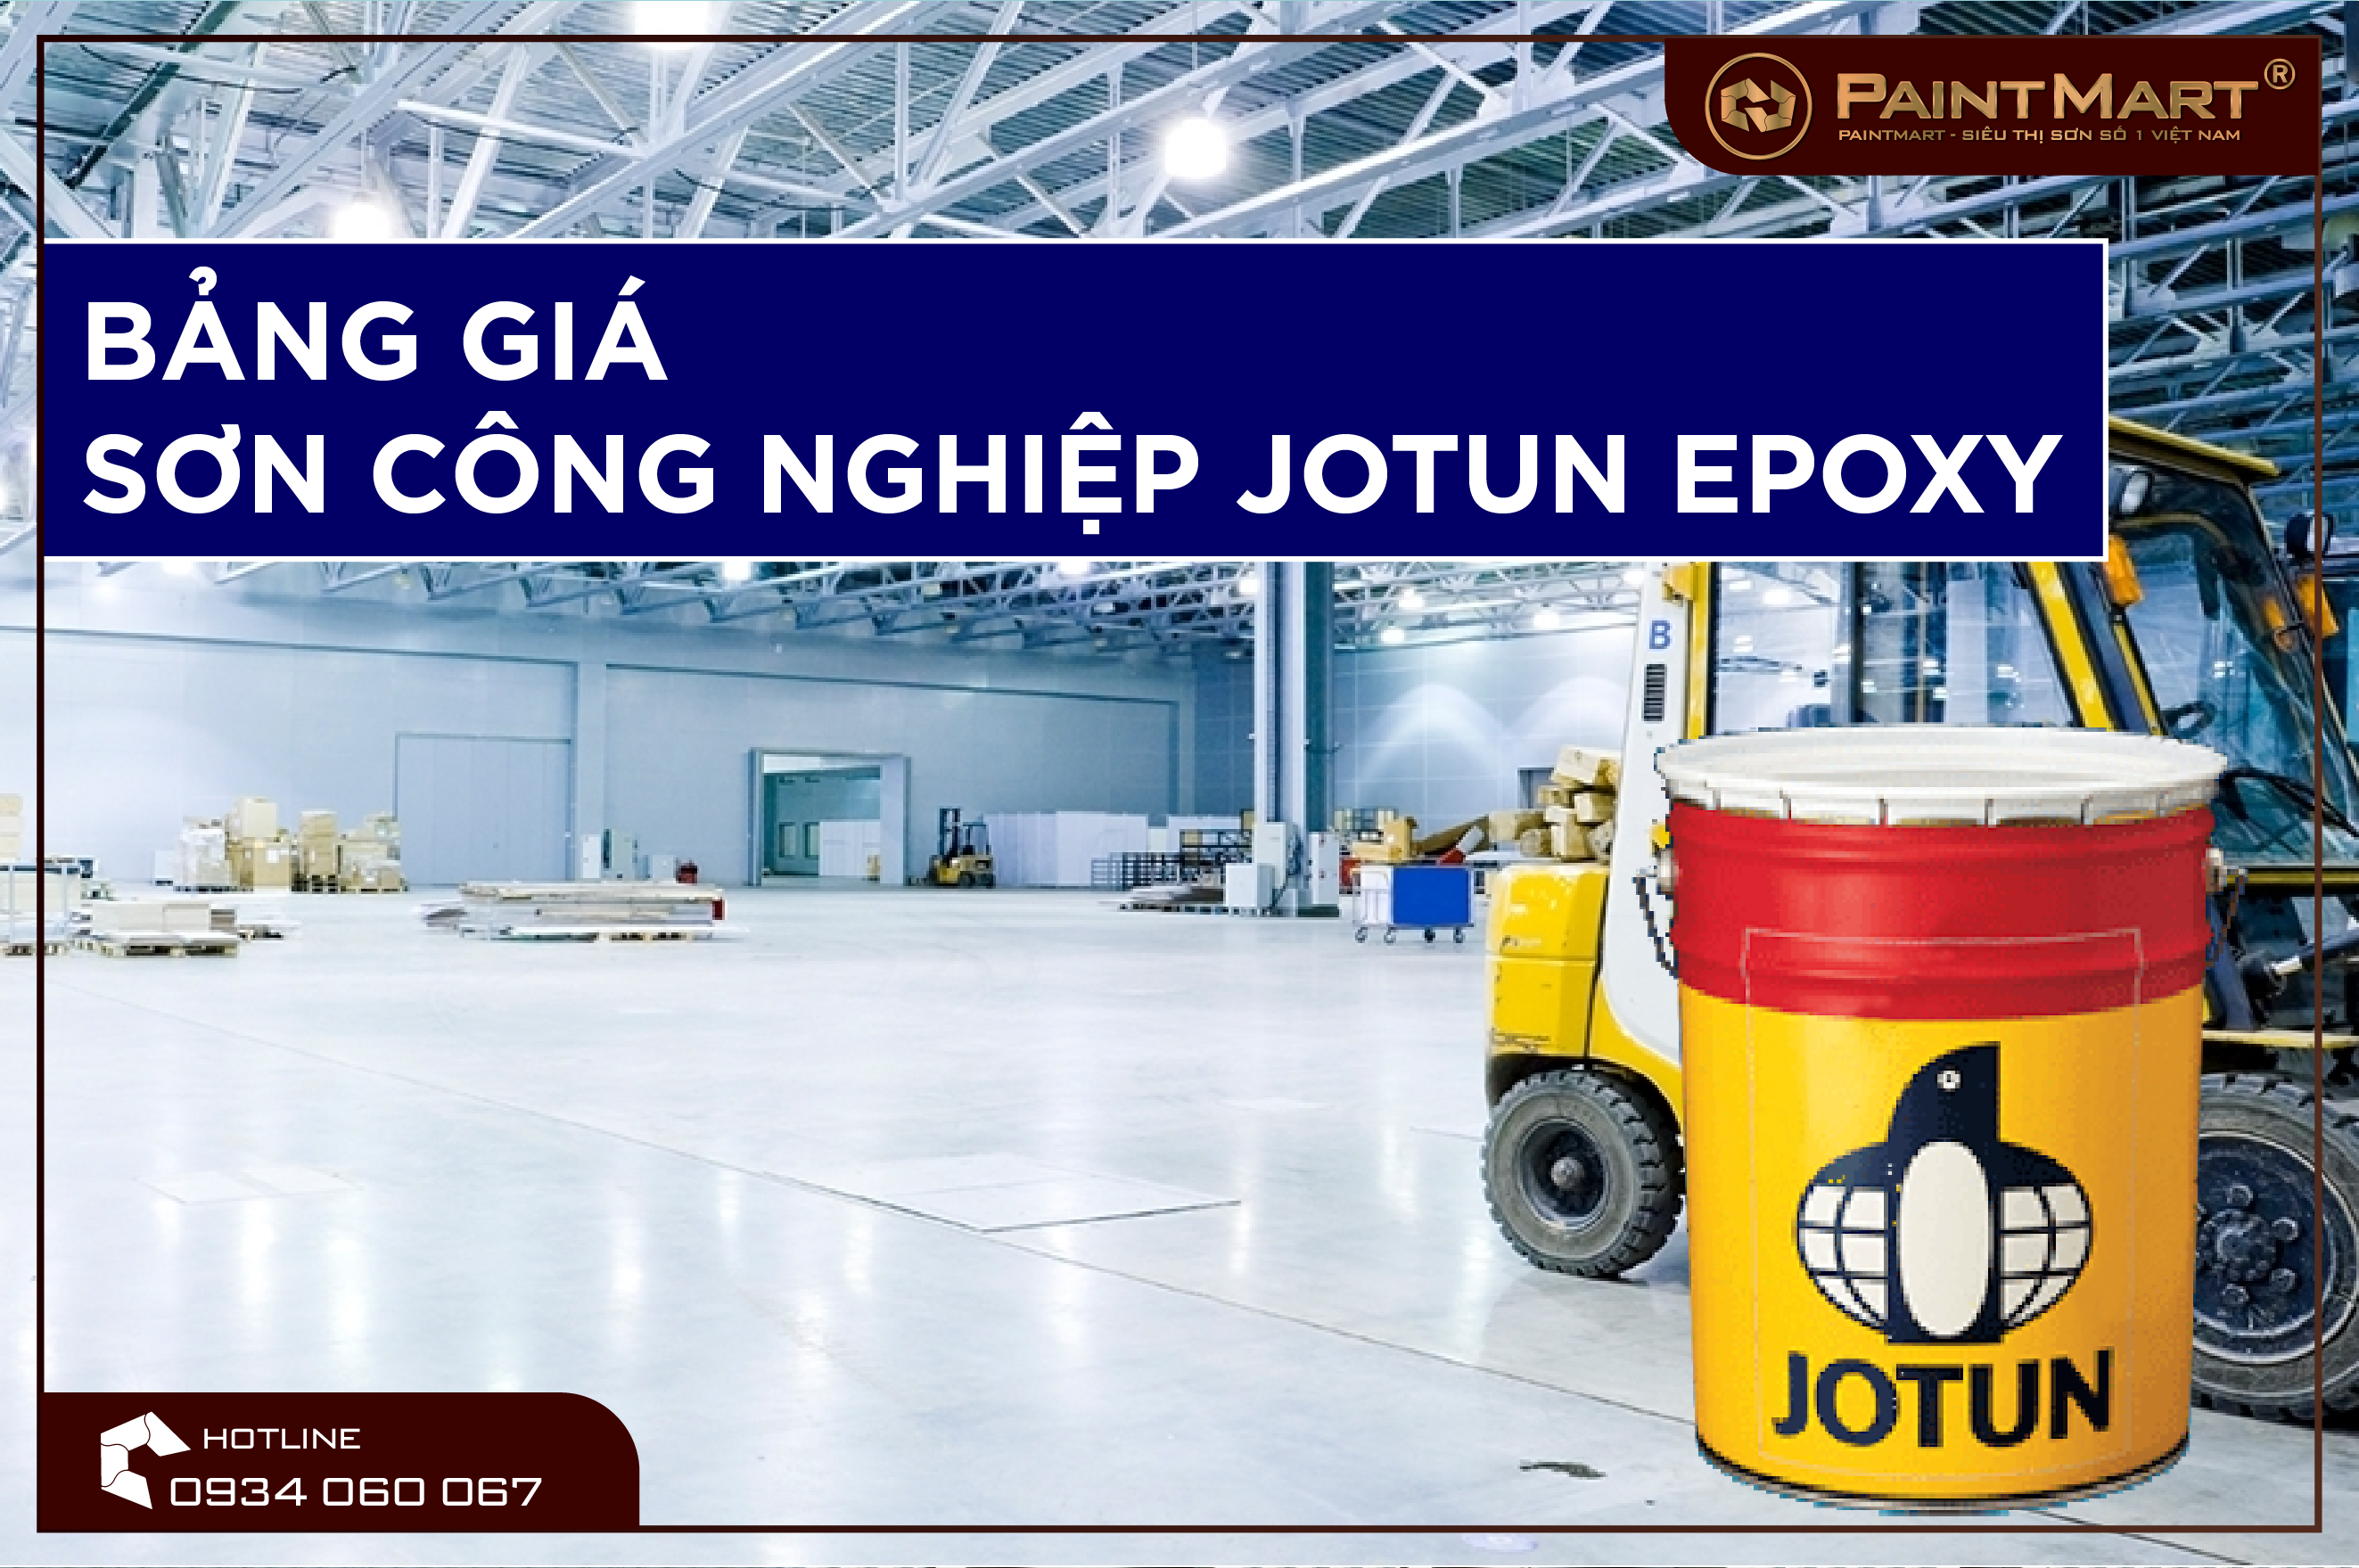 Thực hiện các dự án công nghiệp của bạn với bảng báo giá sơn công nghiệp Jotun Epoxy chính hãng, giá cả phải chăng và chất lượng không đối thủ.